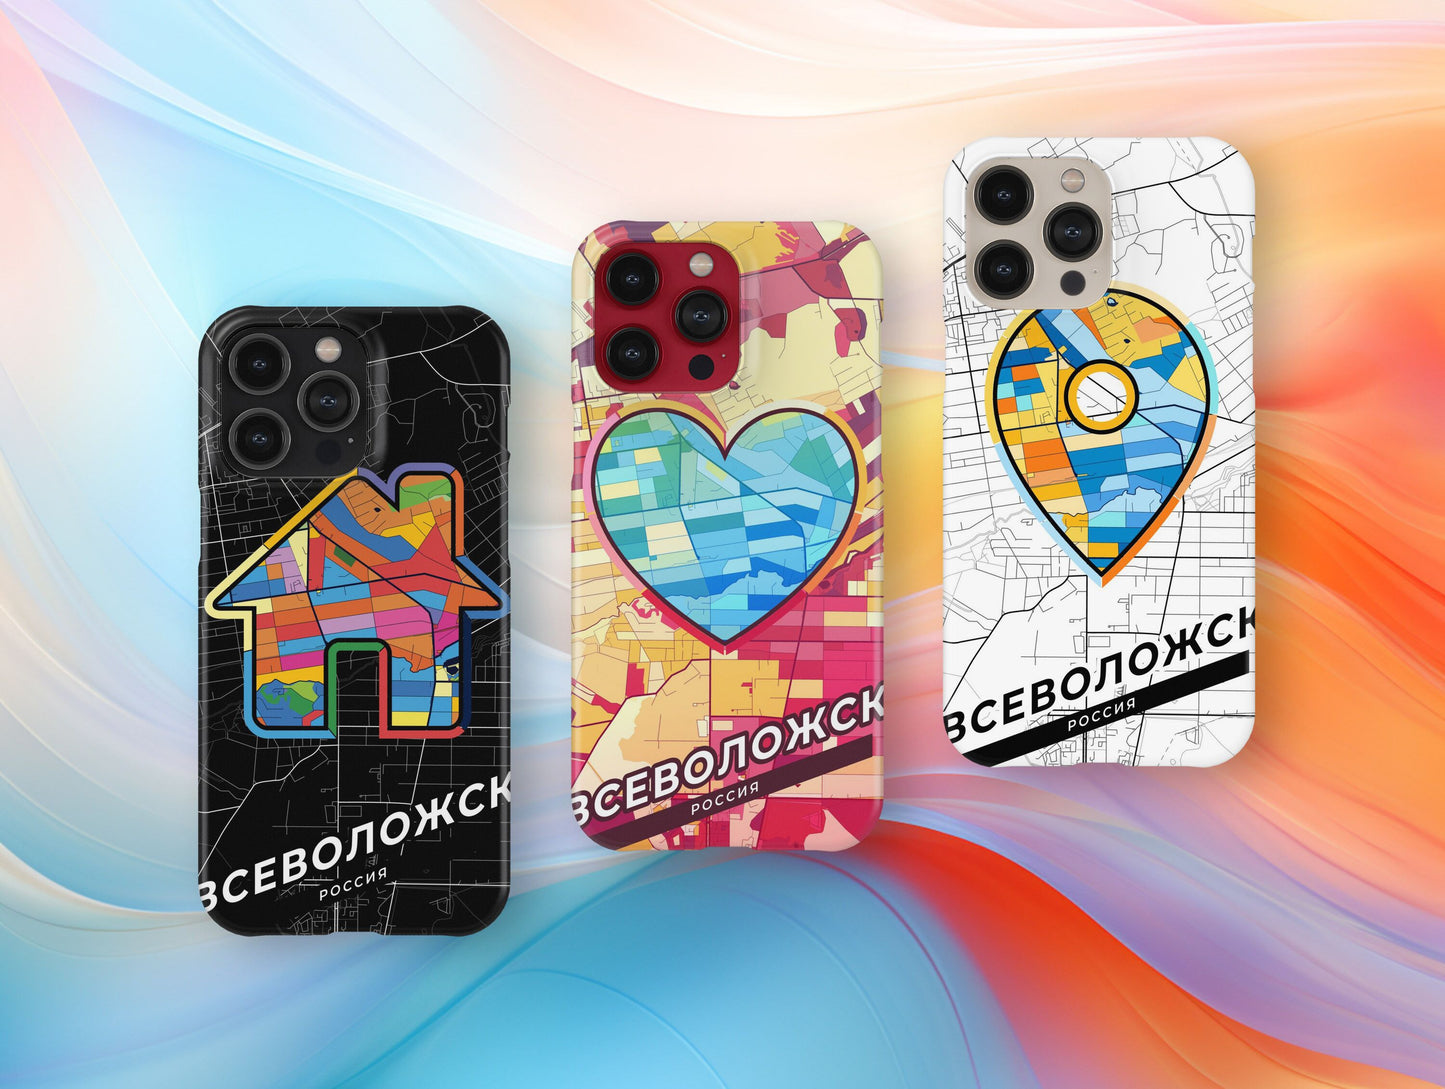 Vsevolozhsk Russia slim phone case with colorful icon